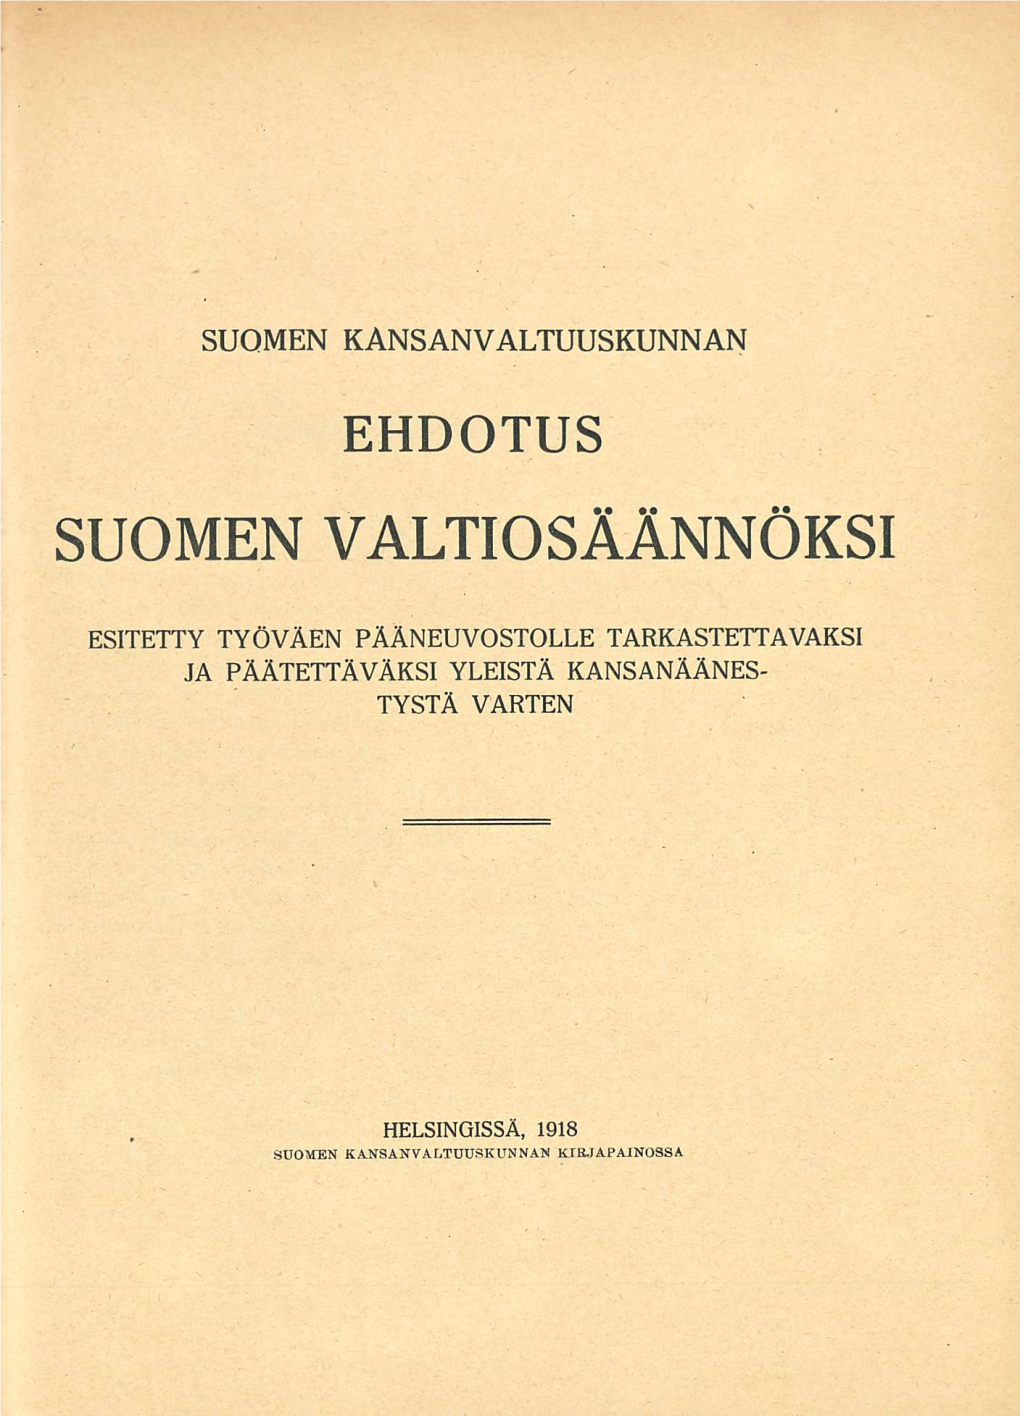 Suomen Valtiosäännöksi